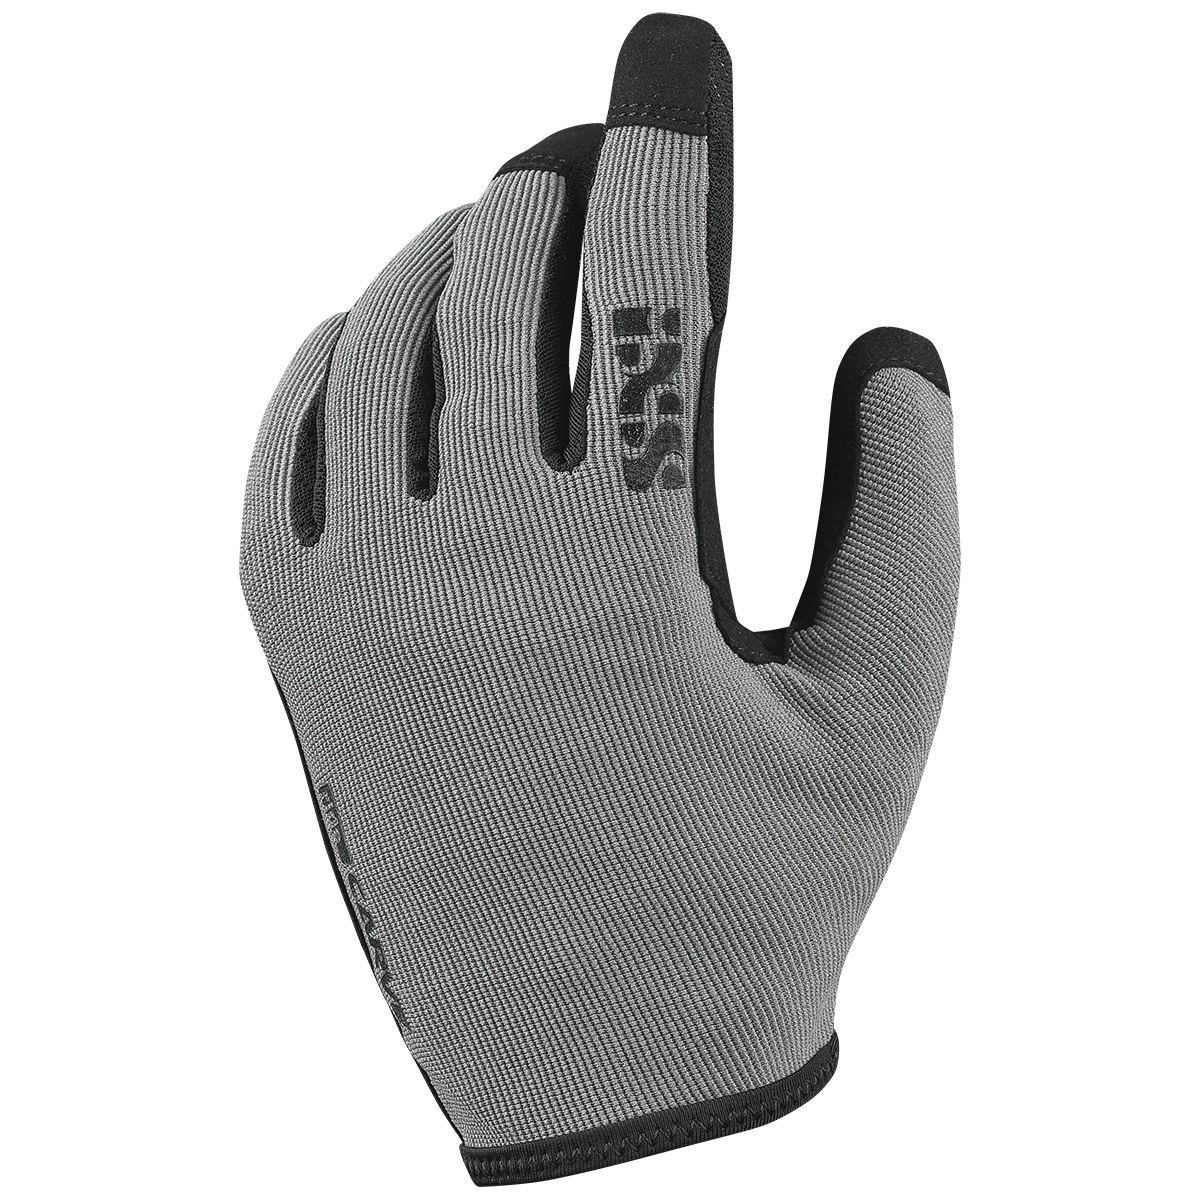 Productfoto van iXS Carve MTB Handschoenen Heren - graphite